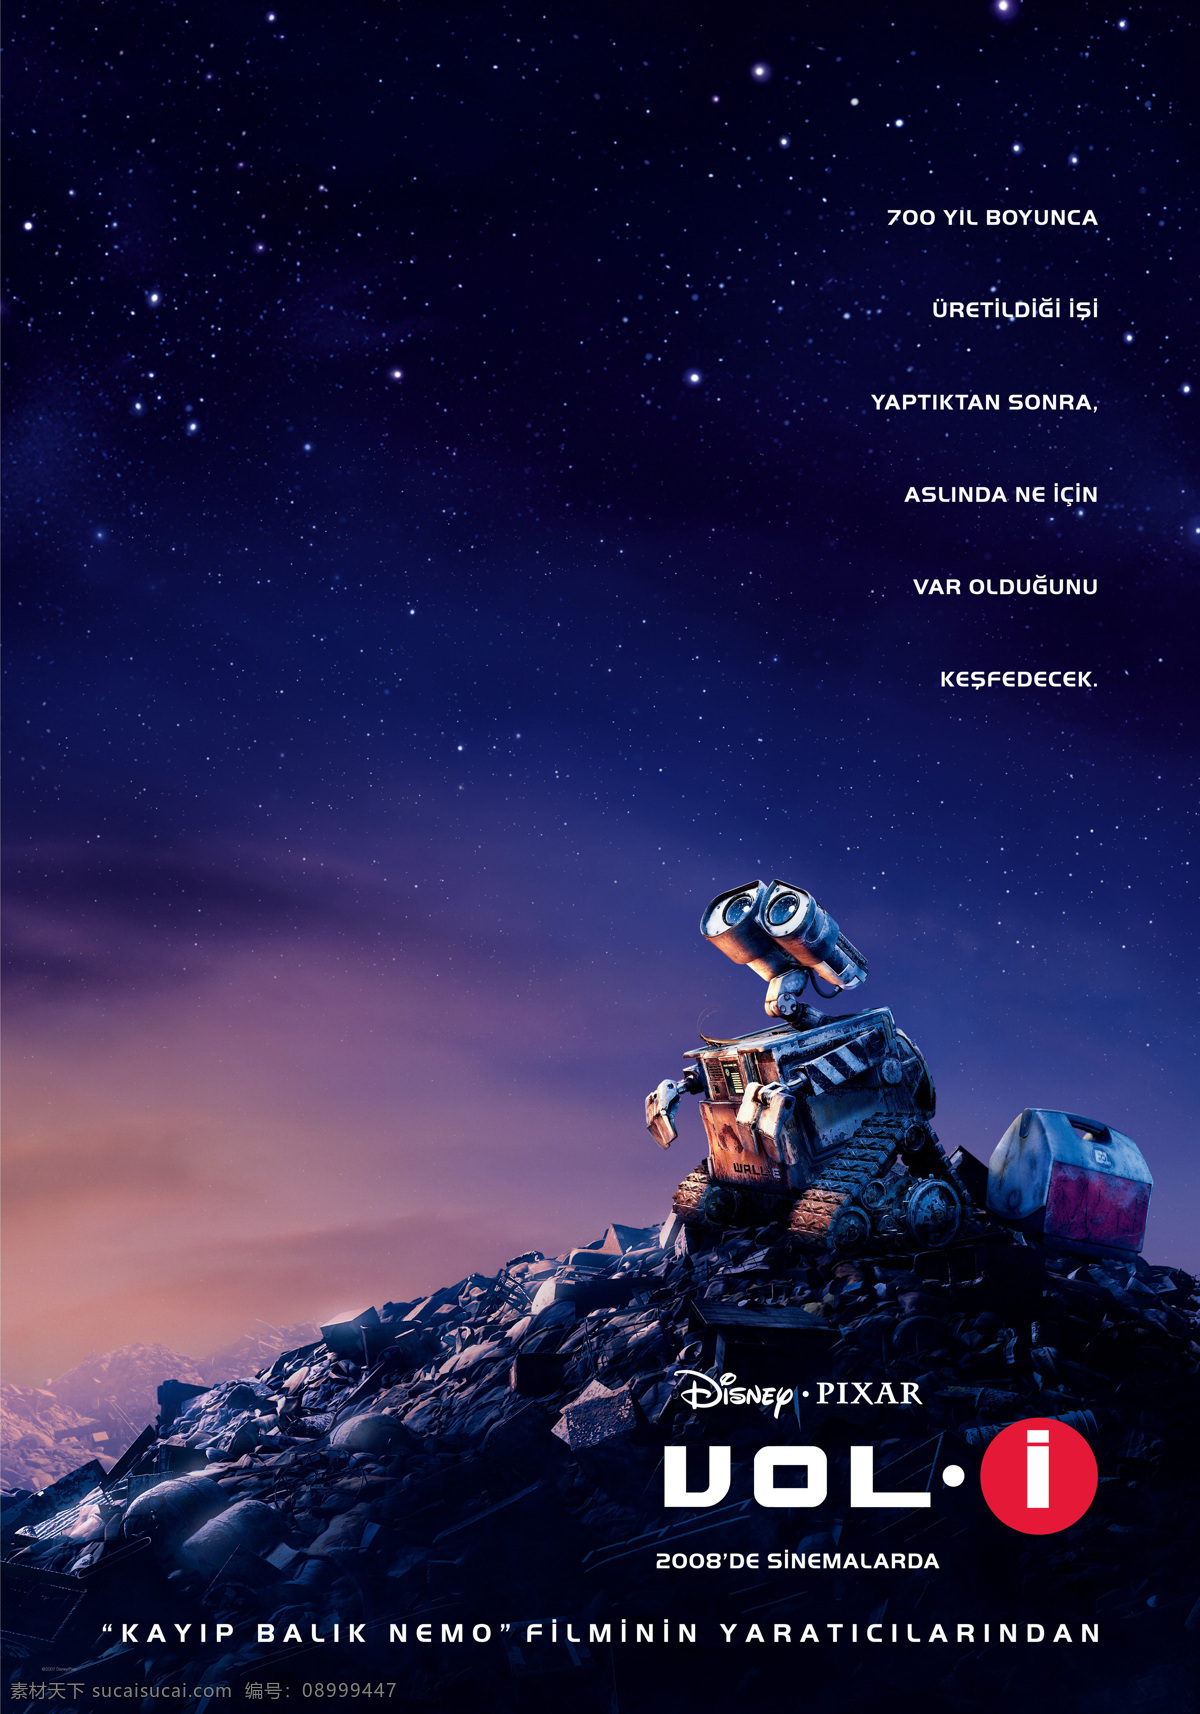 机器人总动员 机器人 总动员 迪斯尼 瓦力 伊娃 迪士尼动画 土耳其版 正式版 皮克斯 皮克斯动画 动画电影 电影海报 海报 经典动画电影 pixar 文化艺术 影视娱乐